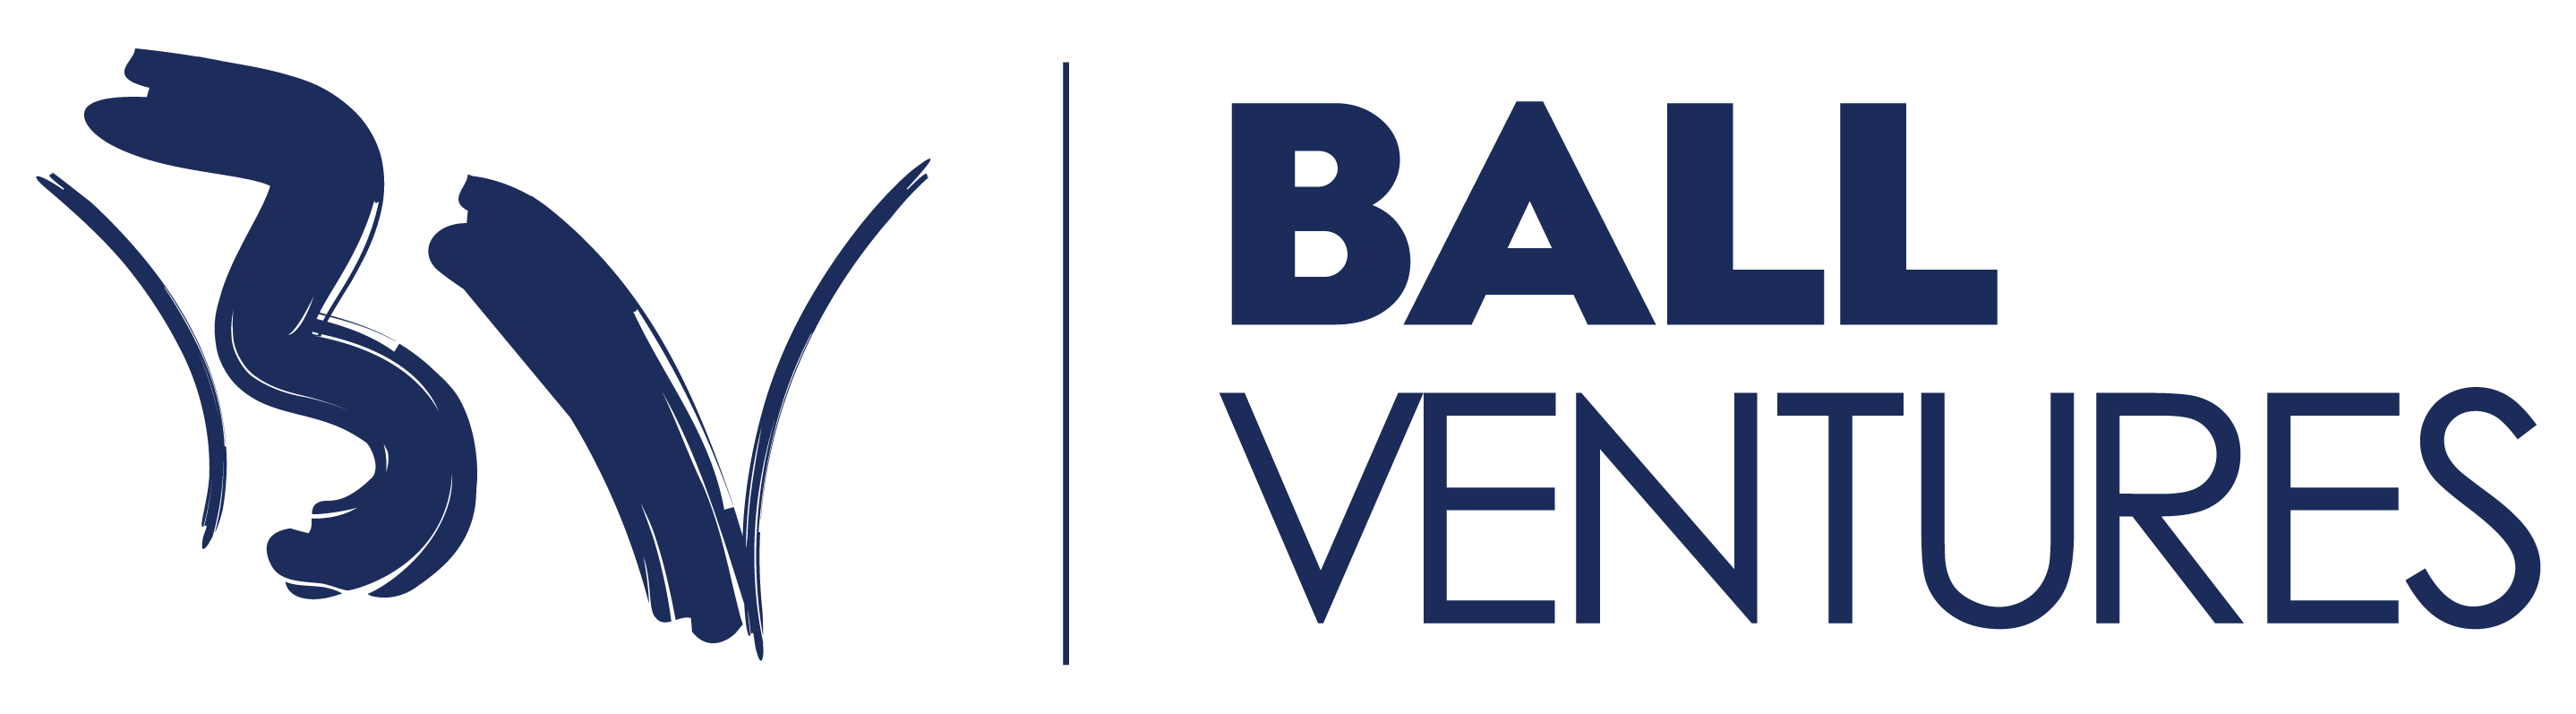 Blue Ball Ventures logo